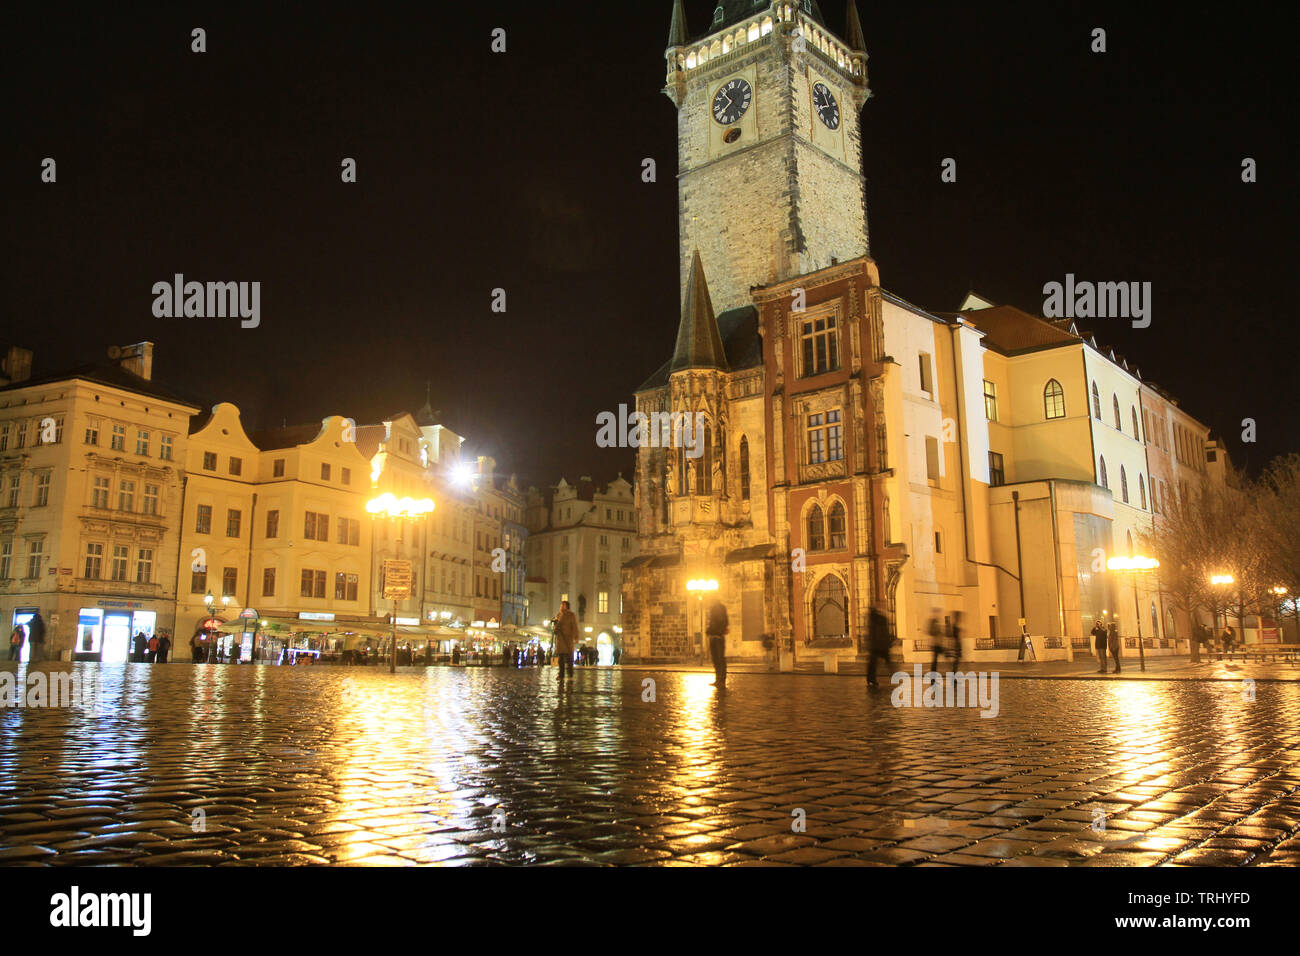 La place de la Vieille Ville et la Tour de l'Horloge de nuit. Prague. Czech Republic. Stock Photo